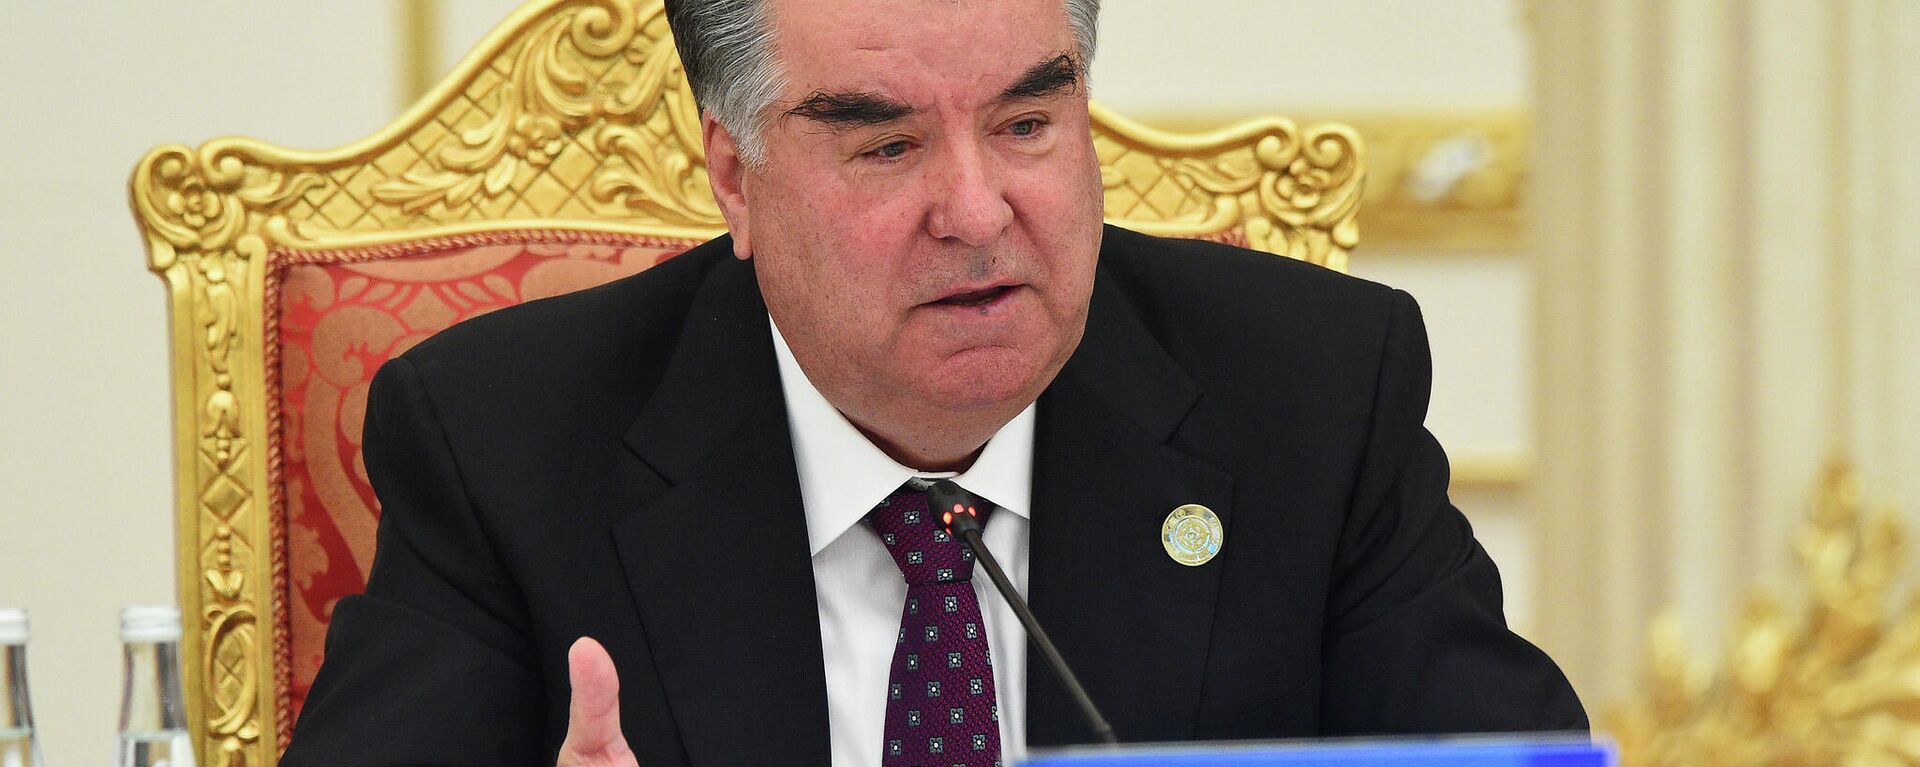 Президент Таджикистана Эмомали Рахмон - Sputnik Тоҷикистон, 1920, 27.09.2021